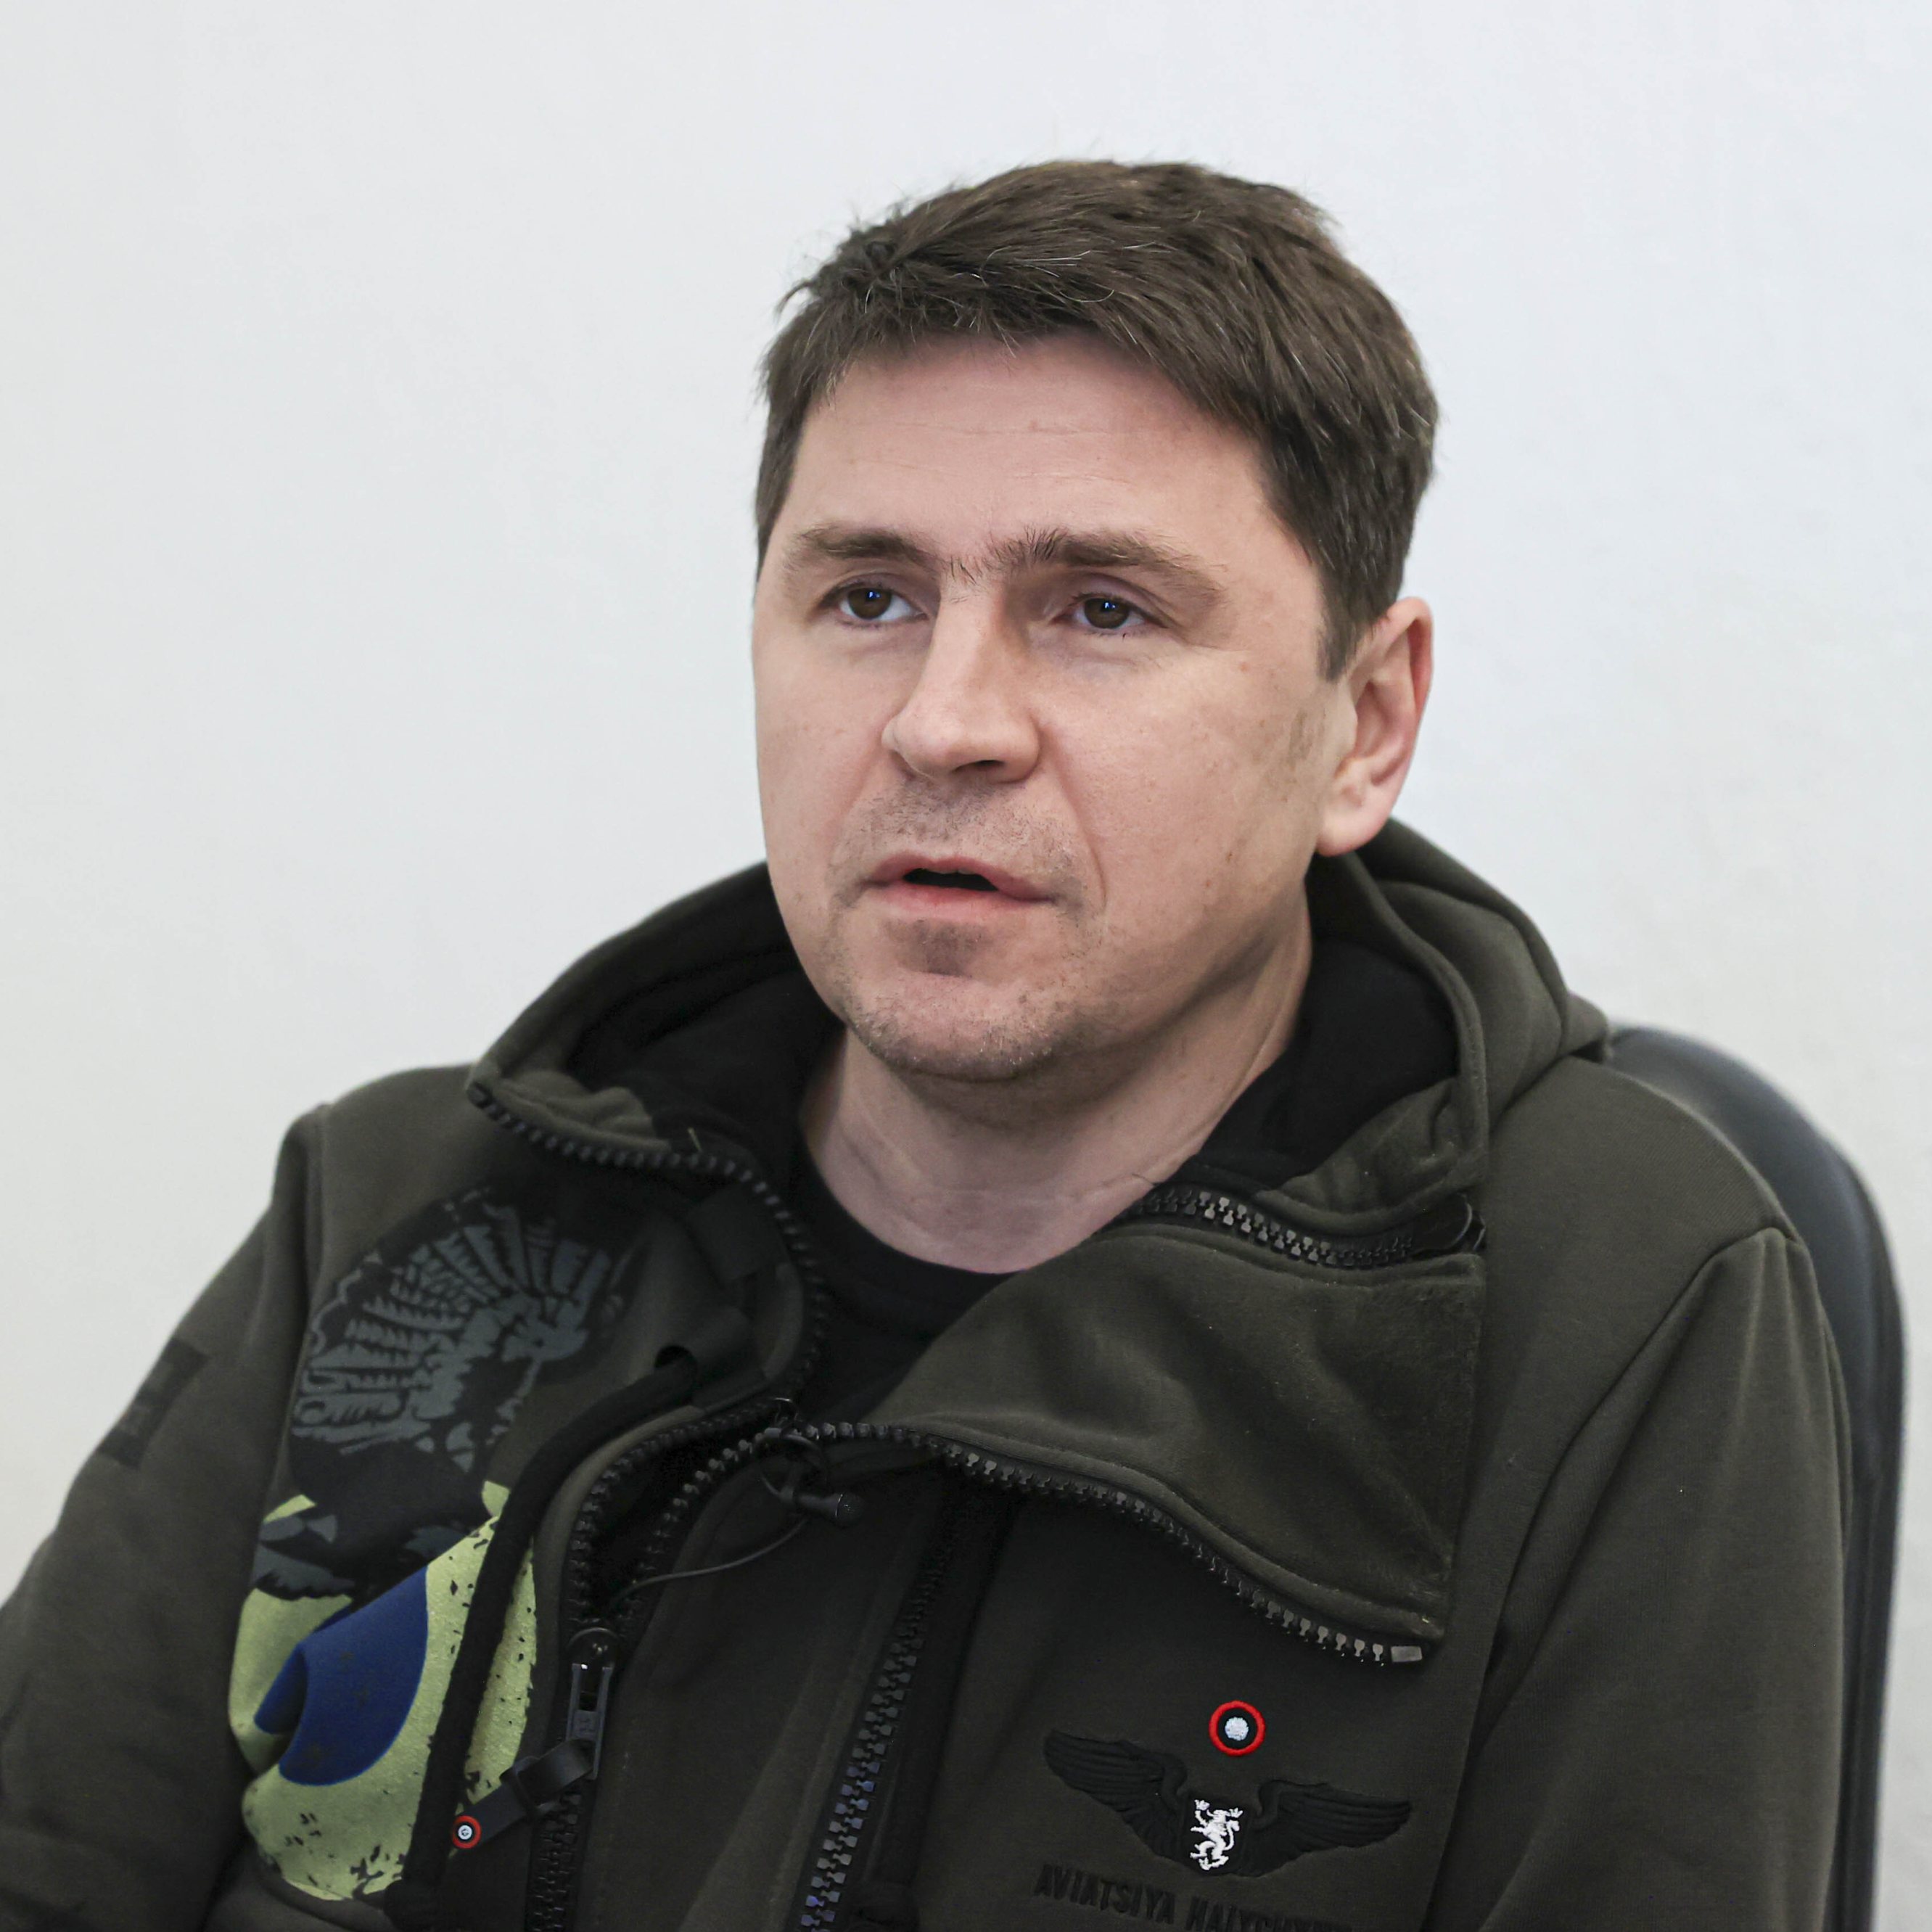 Ukrainian negotiator and presidential adviser Mykhailo Podolyak